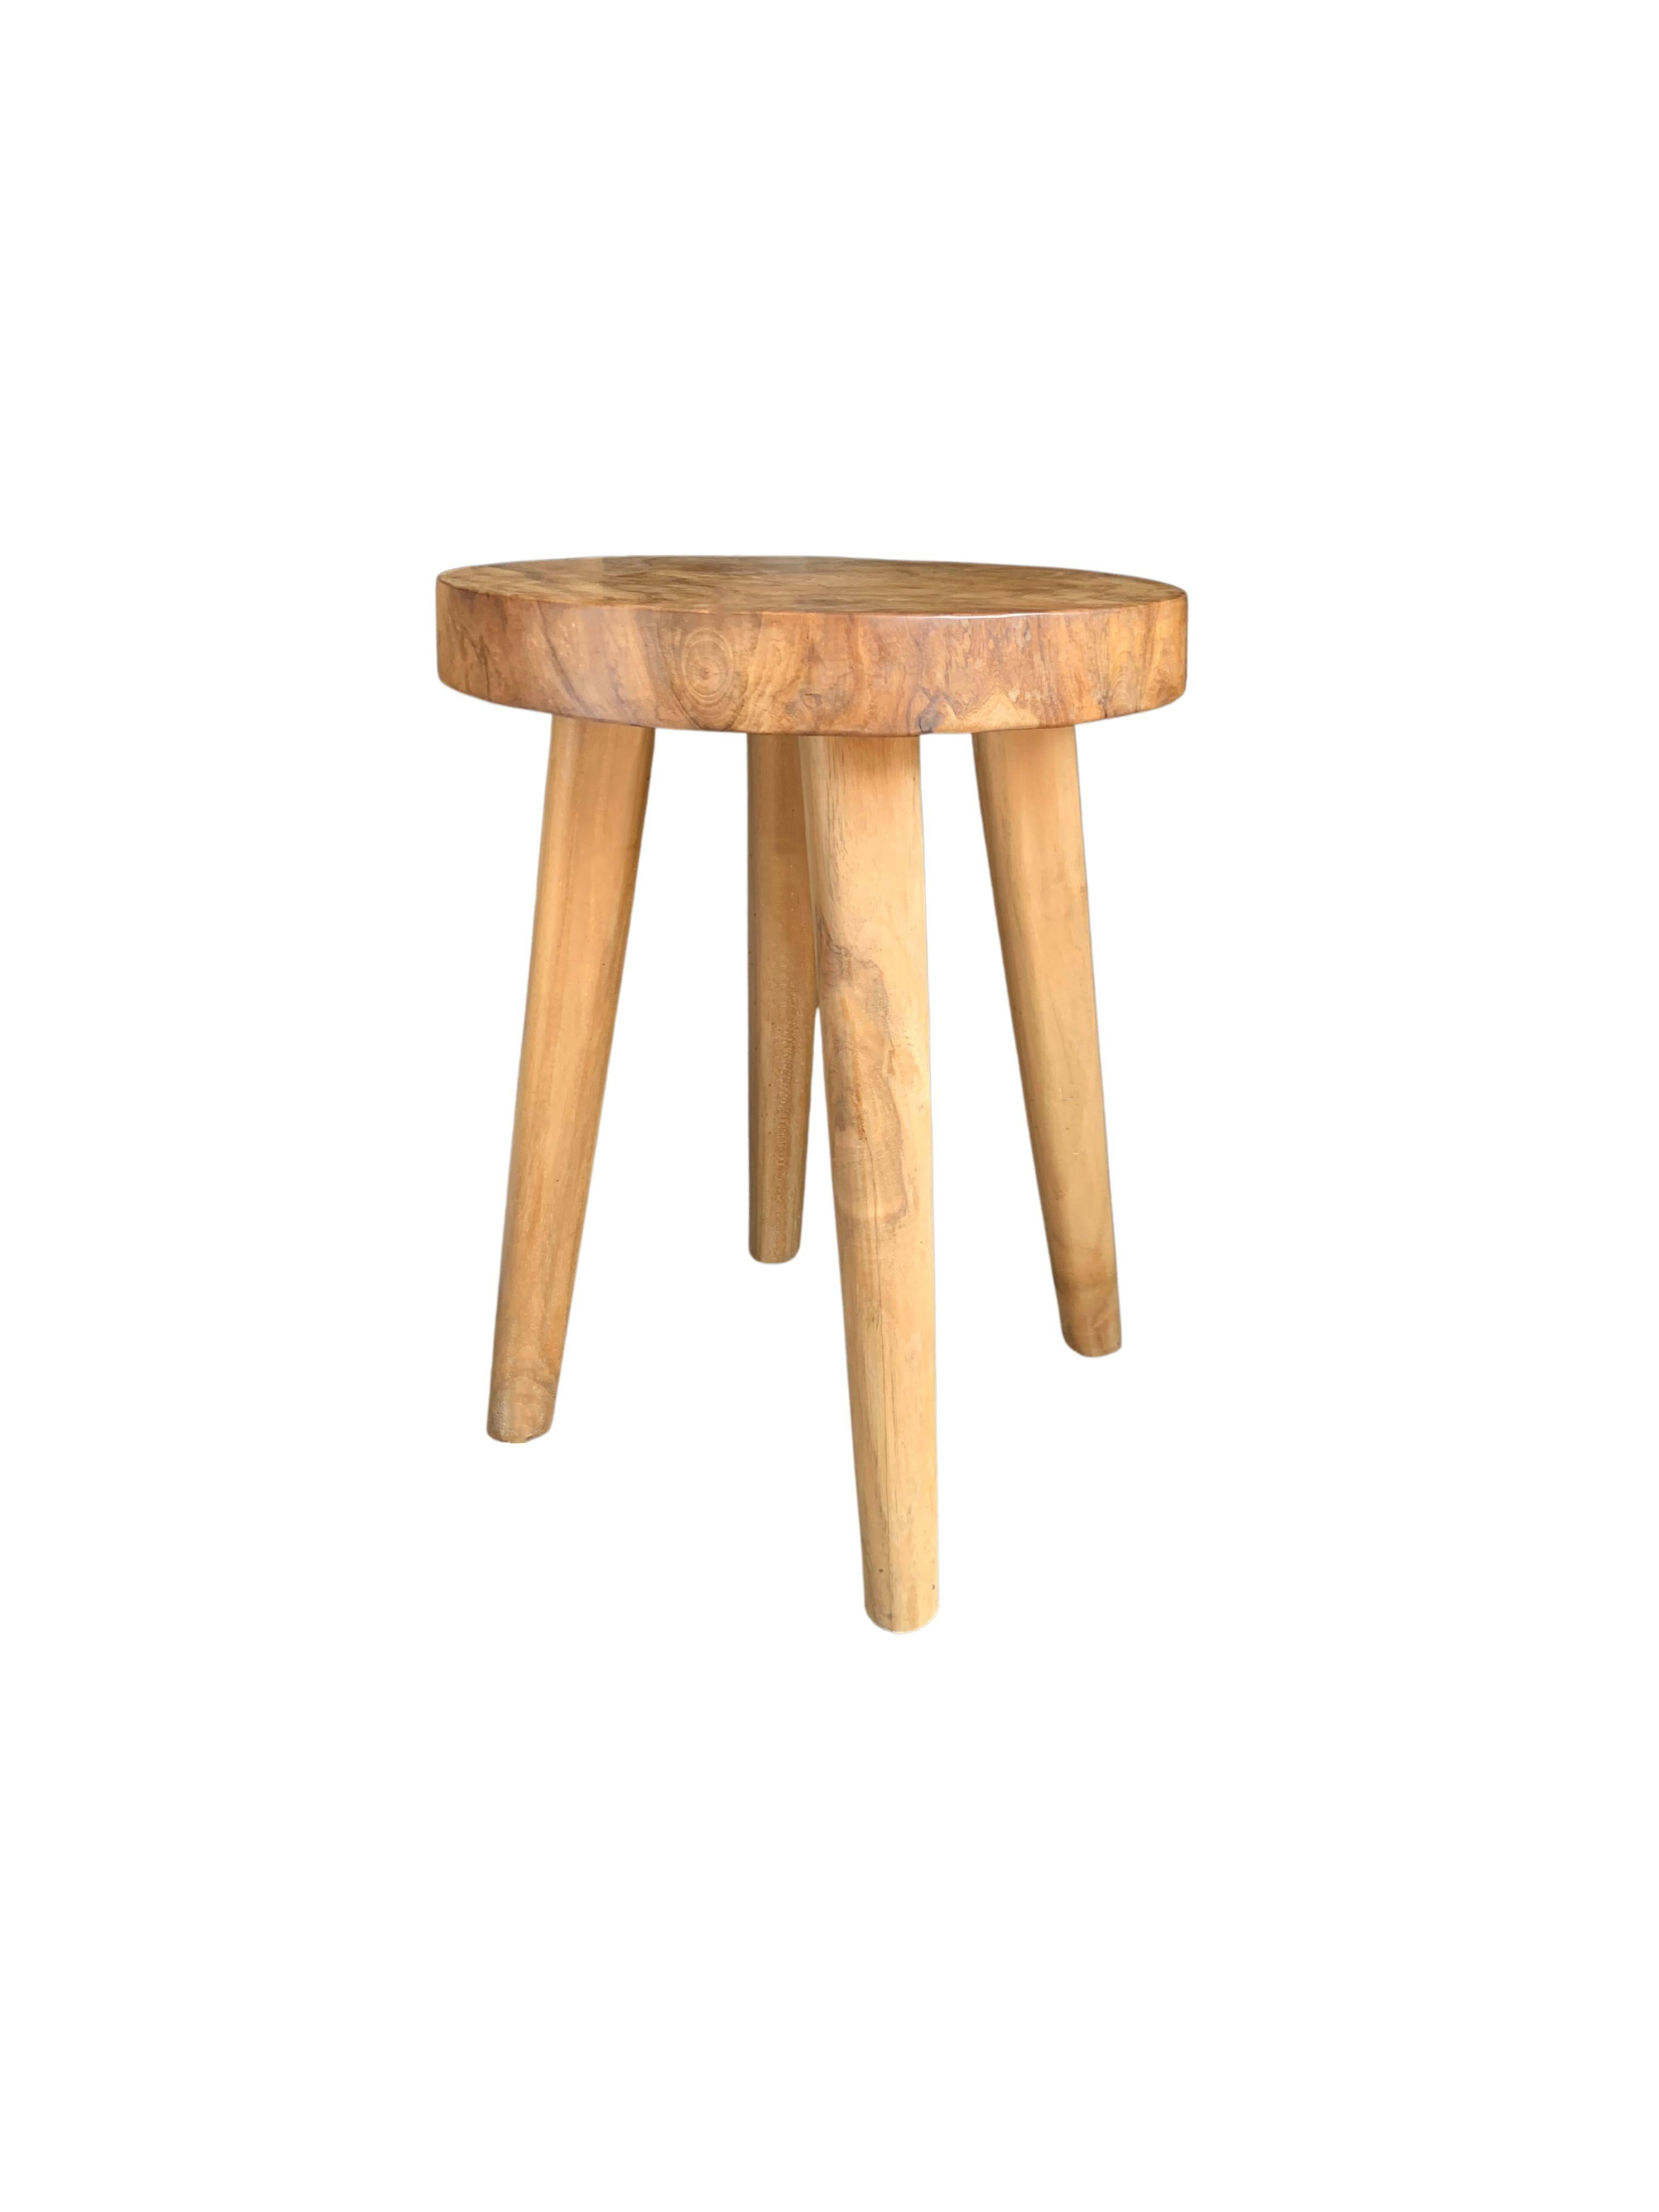 mango wood stools